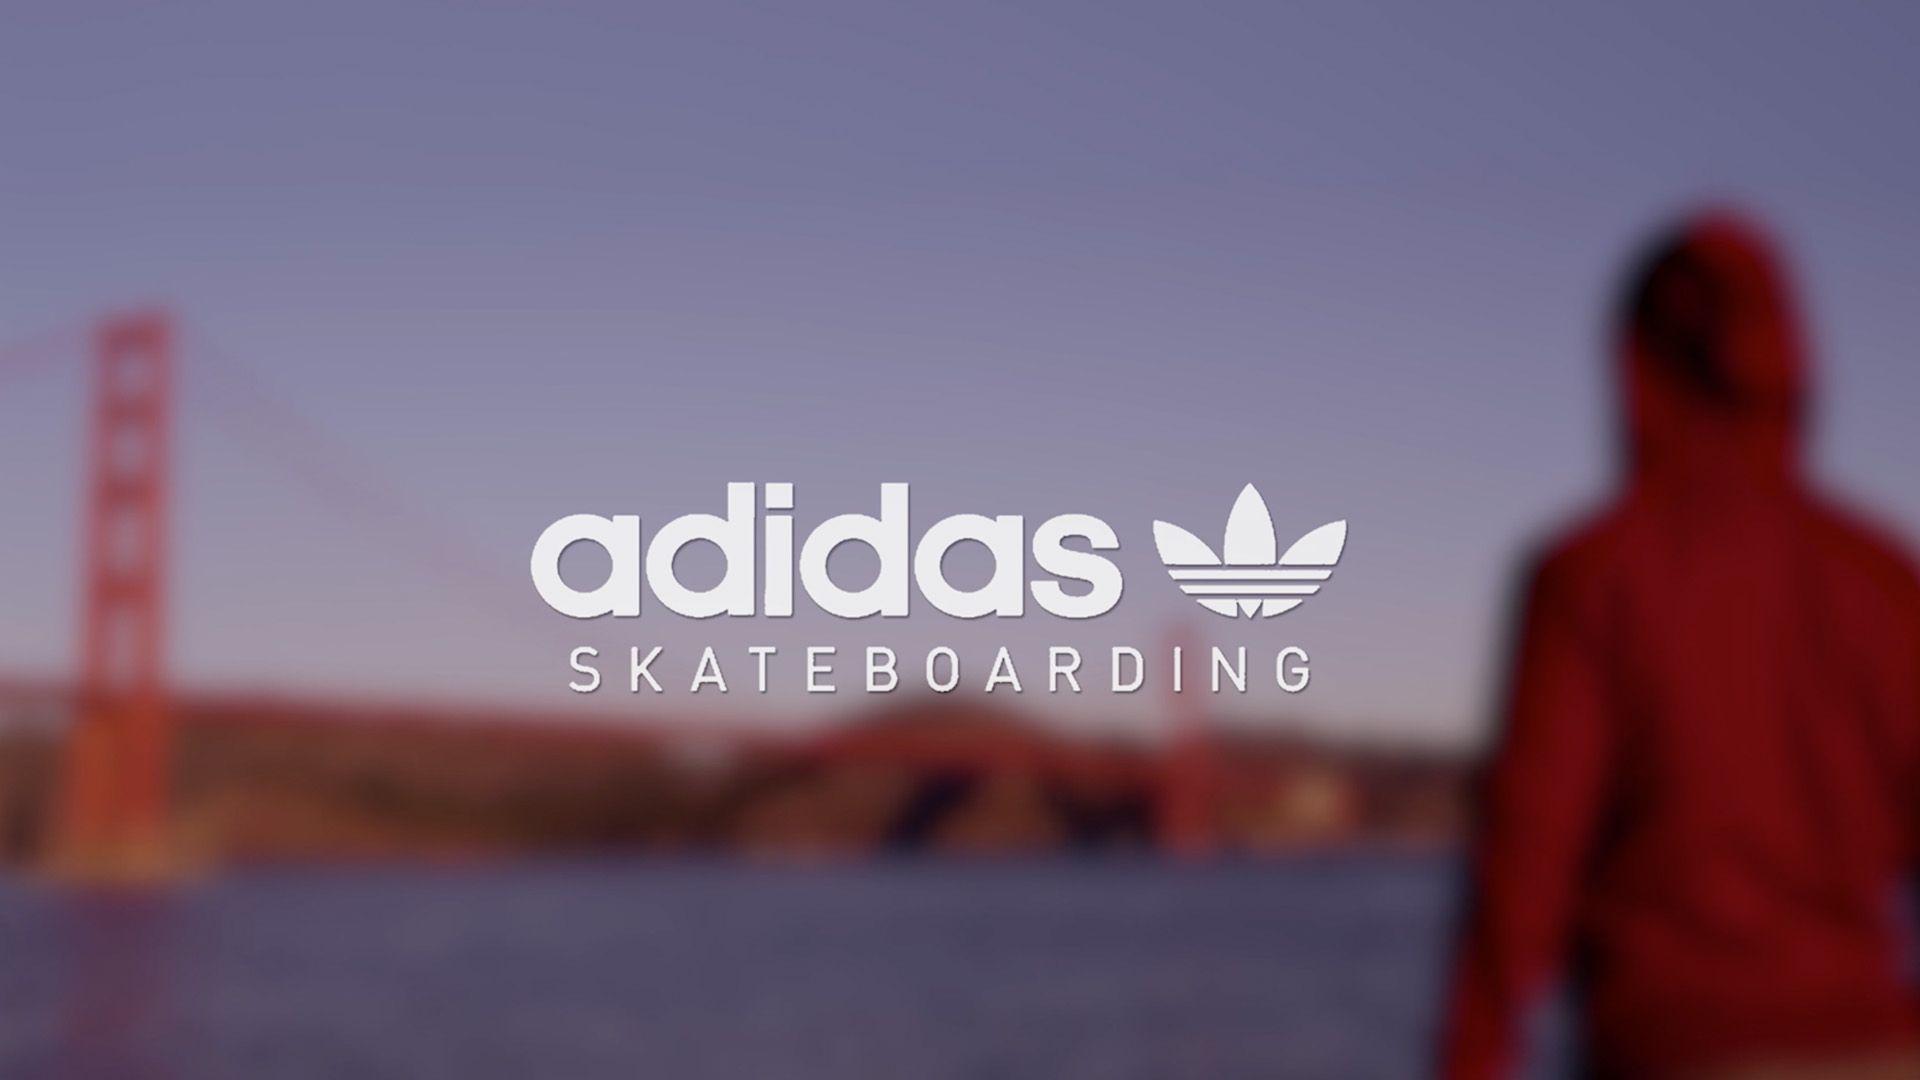 Adidas Skateboarding Wallpaper